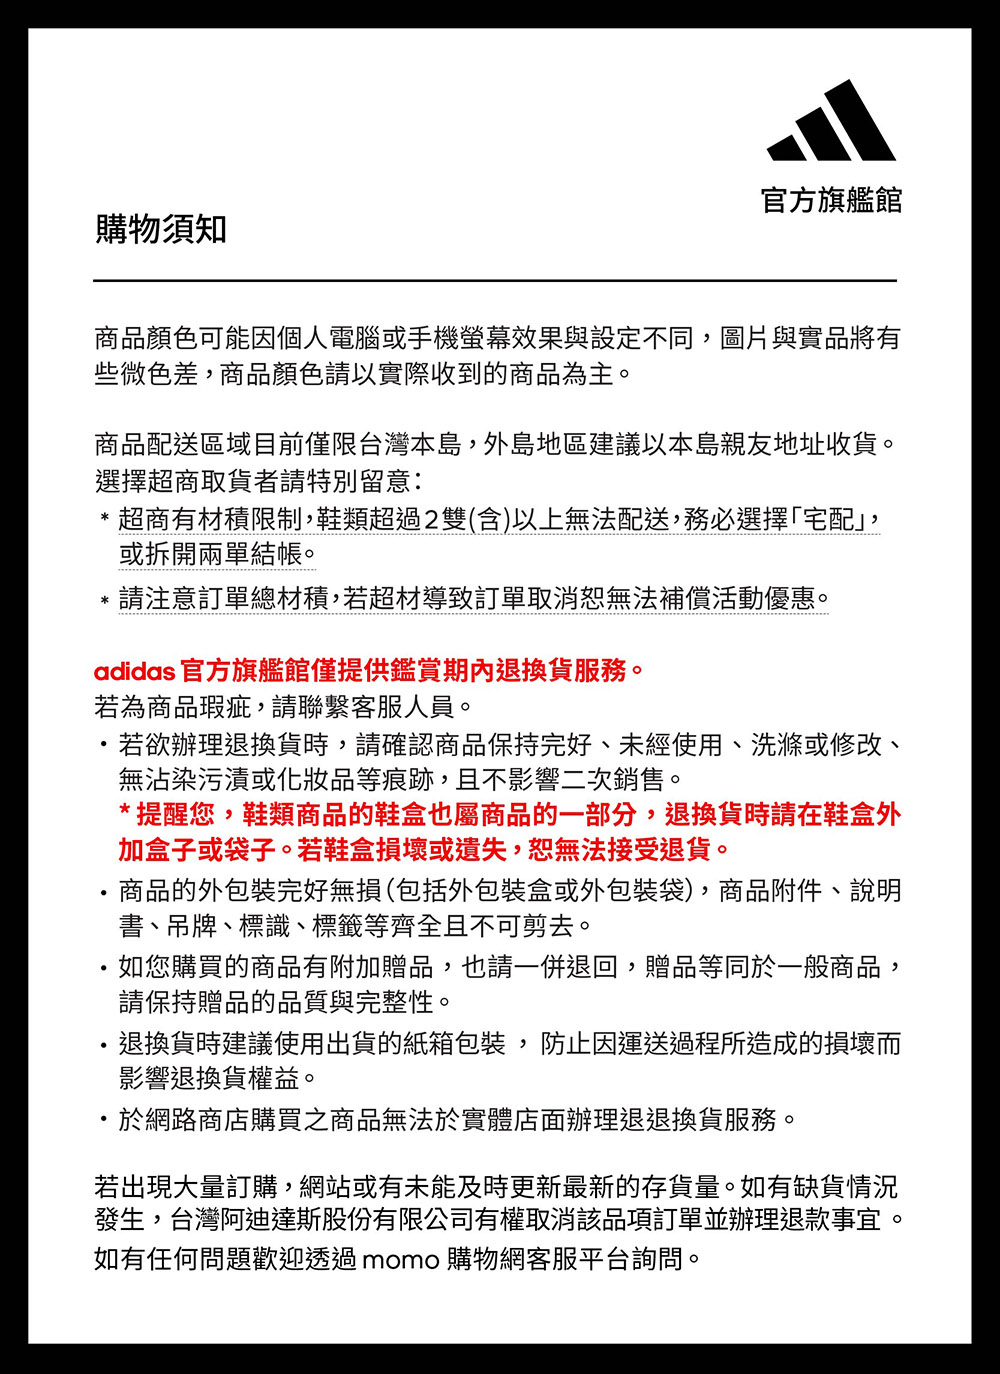 發生,台灣阿迪達斯股份有限公司有權取消該品項訂單並辦理退款事宜。